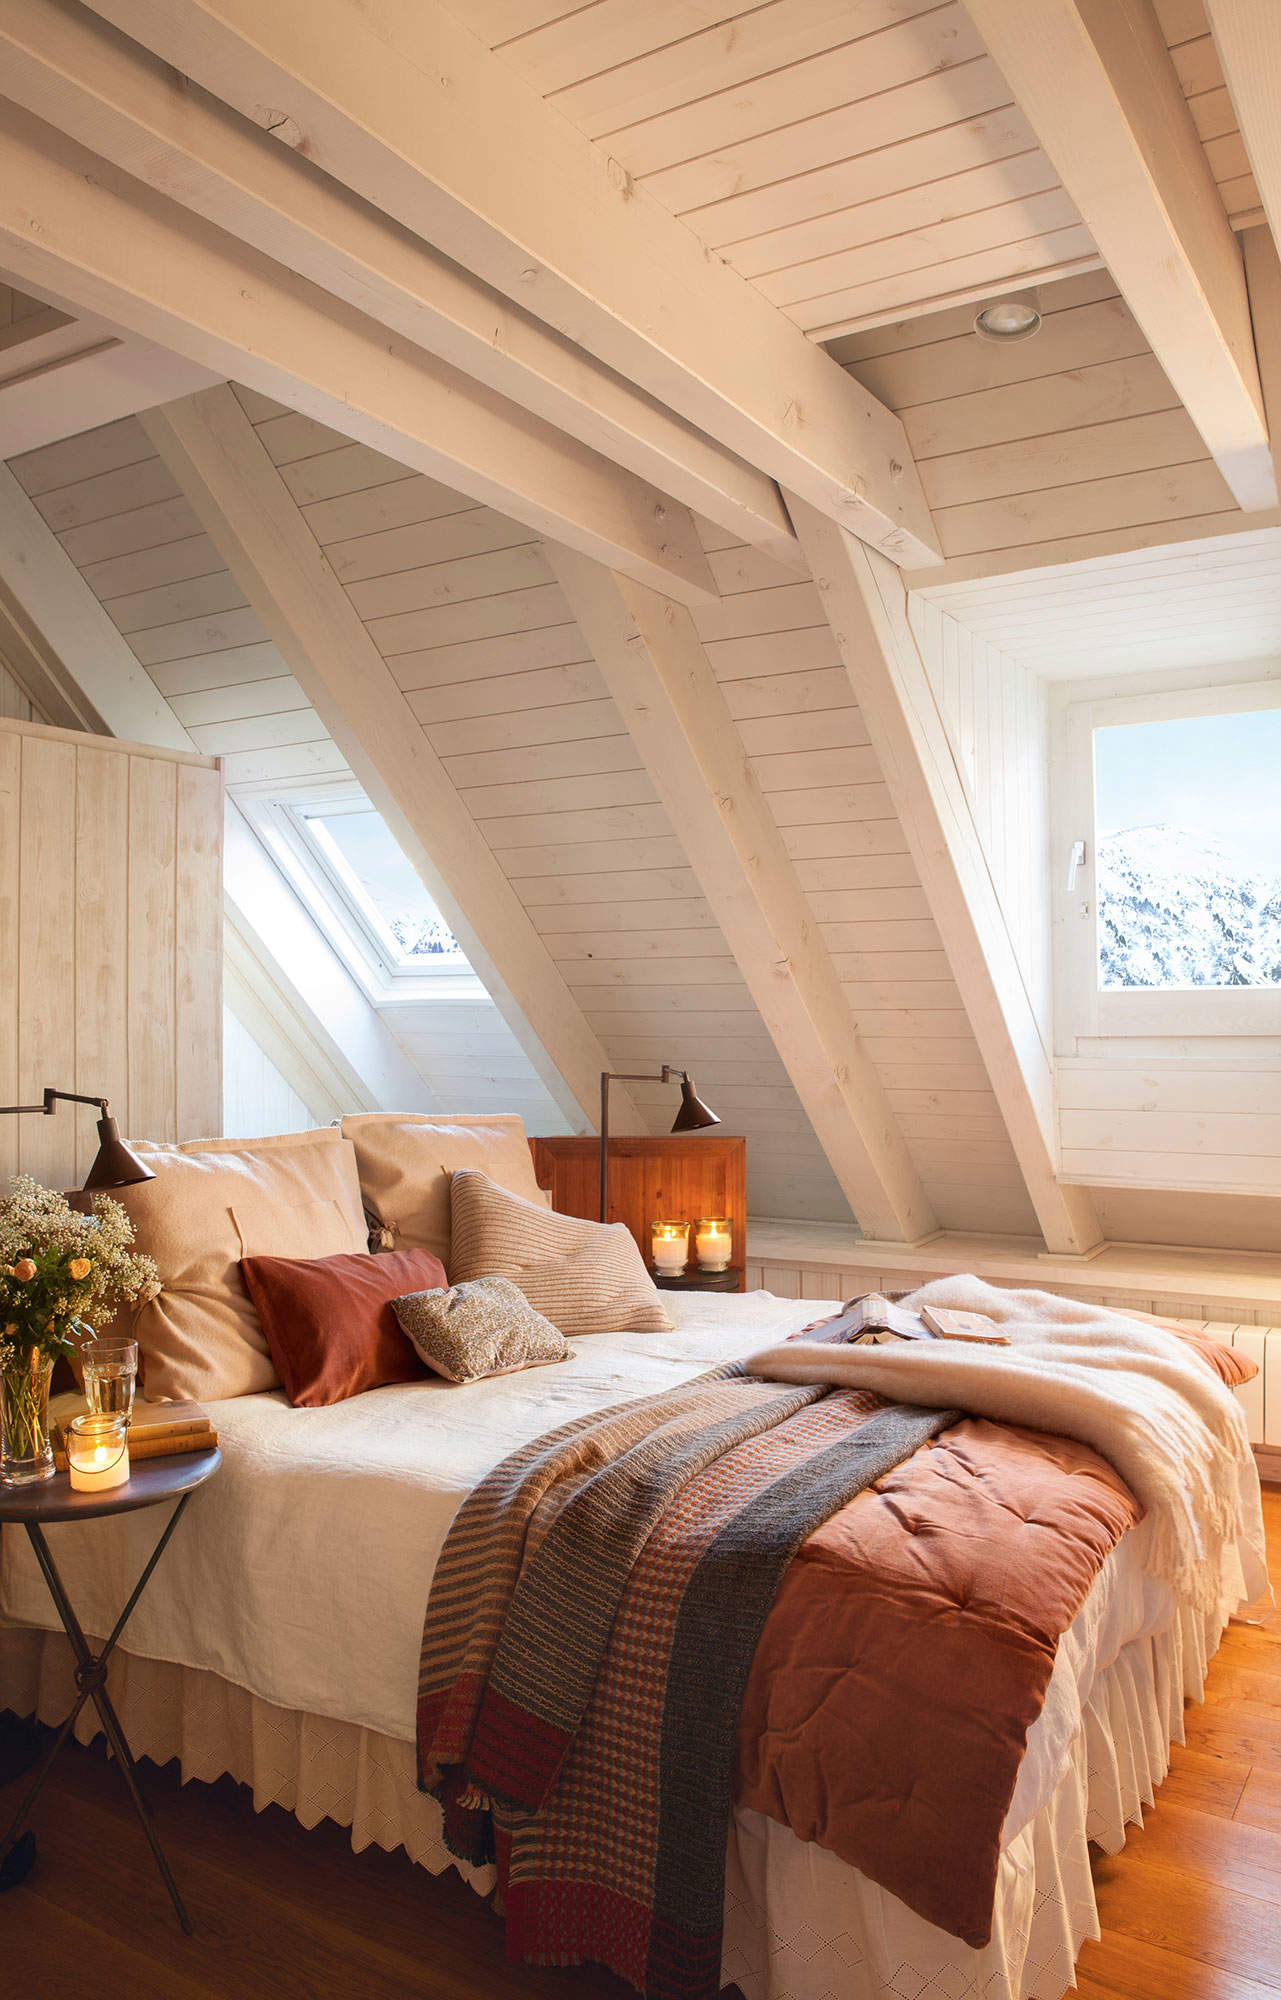 Dormitorio rústico en buhardilla con techo de madera en blanco